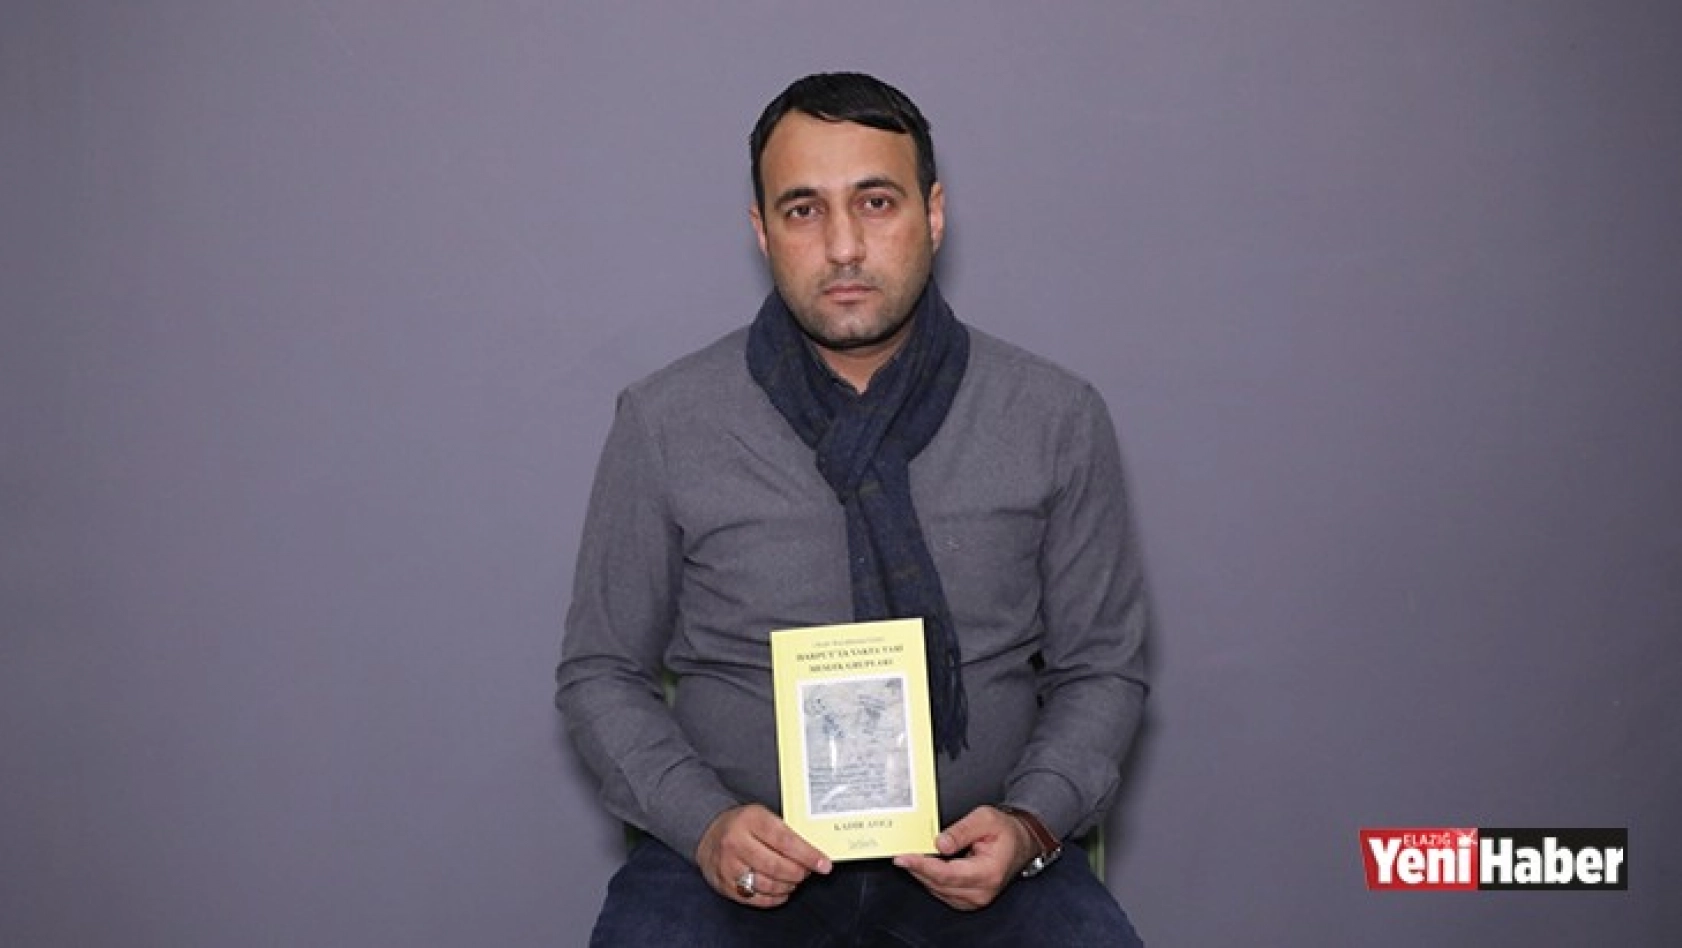 'Harput'ta Vakfa Tabi Meslek Grupları' Adlı Kitap Kitap Çıktı